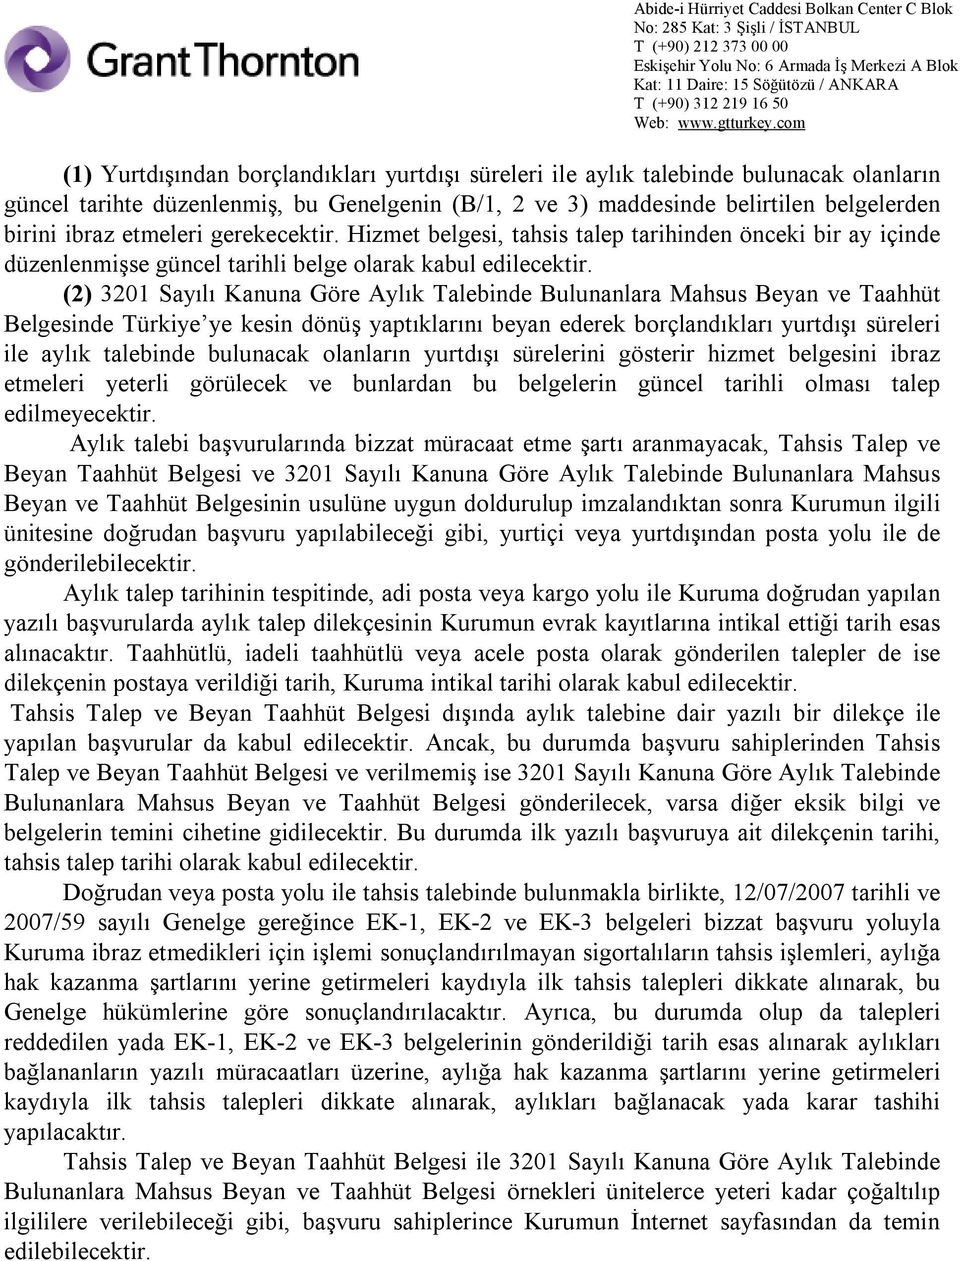 (2) 3201 Sayılı Kanuna Göre Aylık Talebinde Bulunanlara Mahsus Beyan ve Taahhüt Belgesinde Türkiye ye kesin dönüş yaptıklarını beyan ederek borçlandıkları yurtdışı süreleri ile aylık talebinde